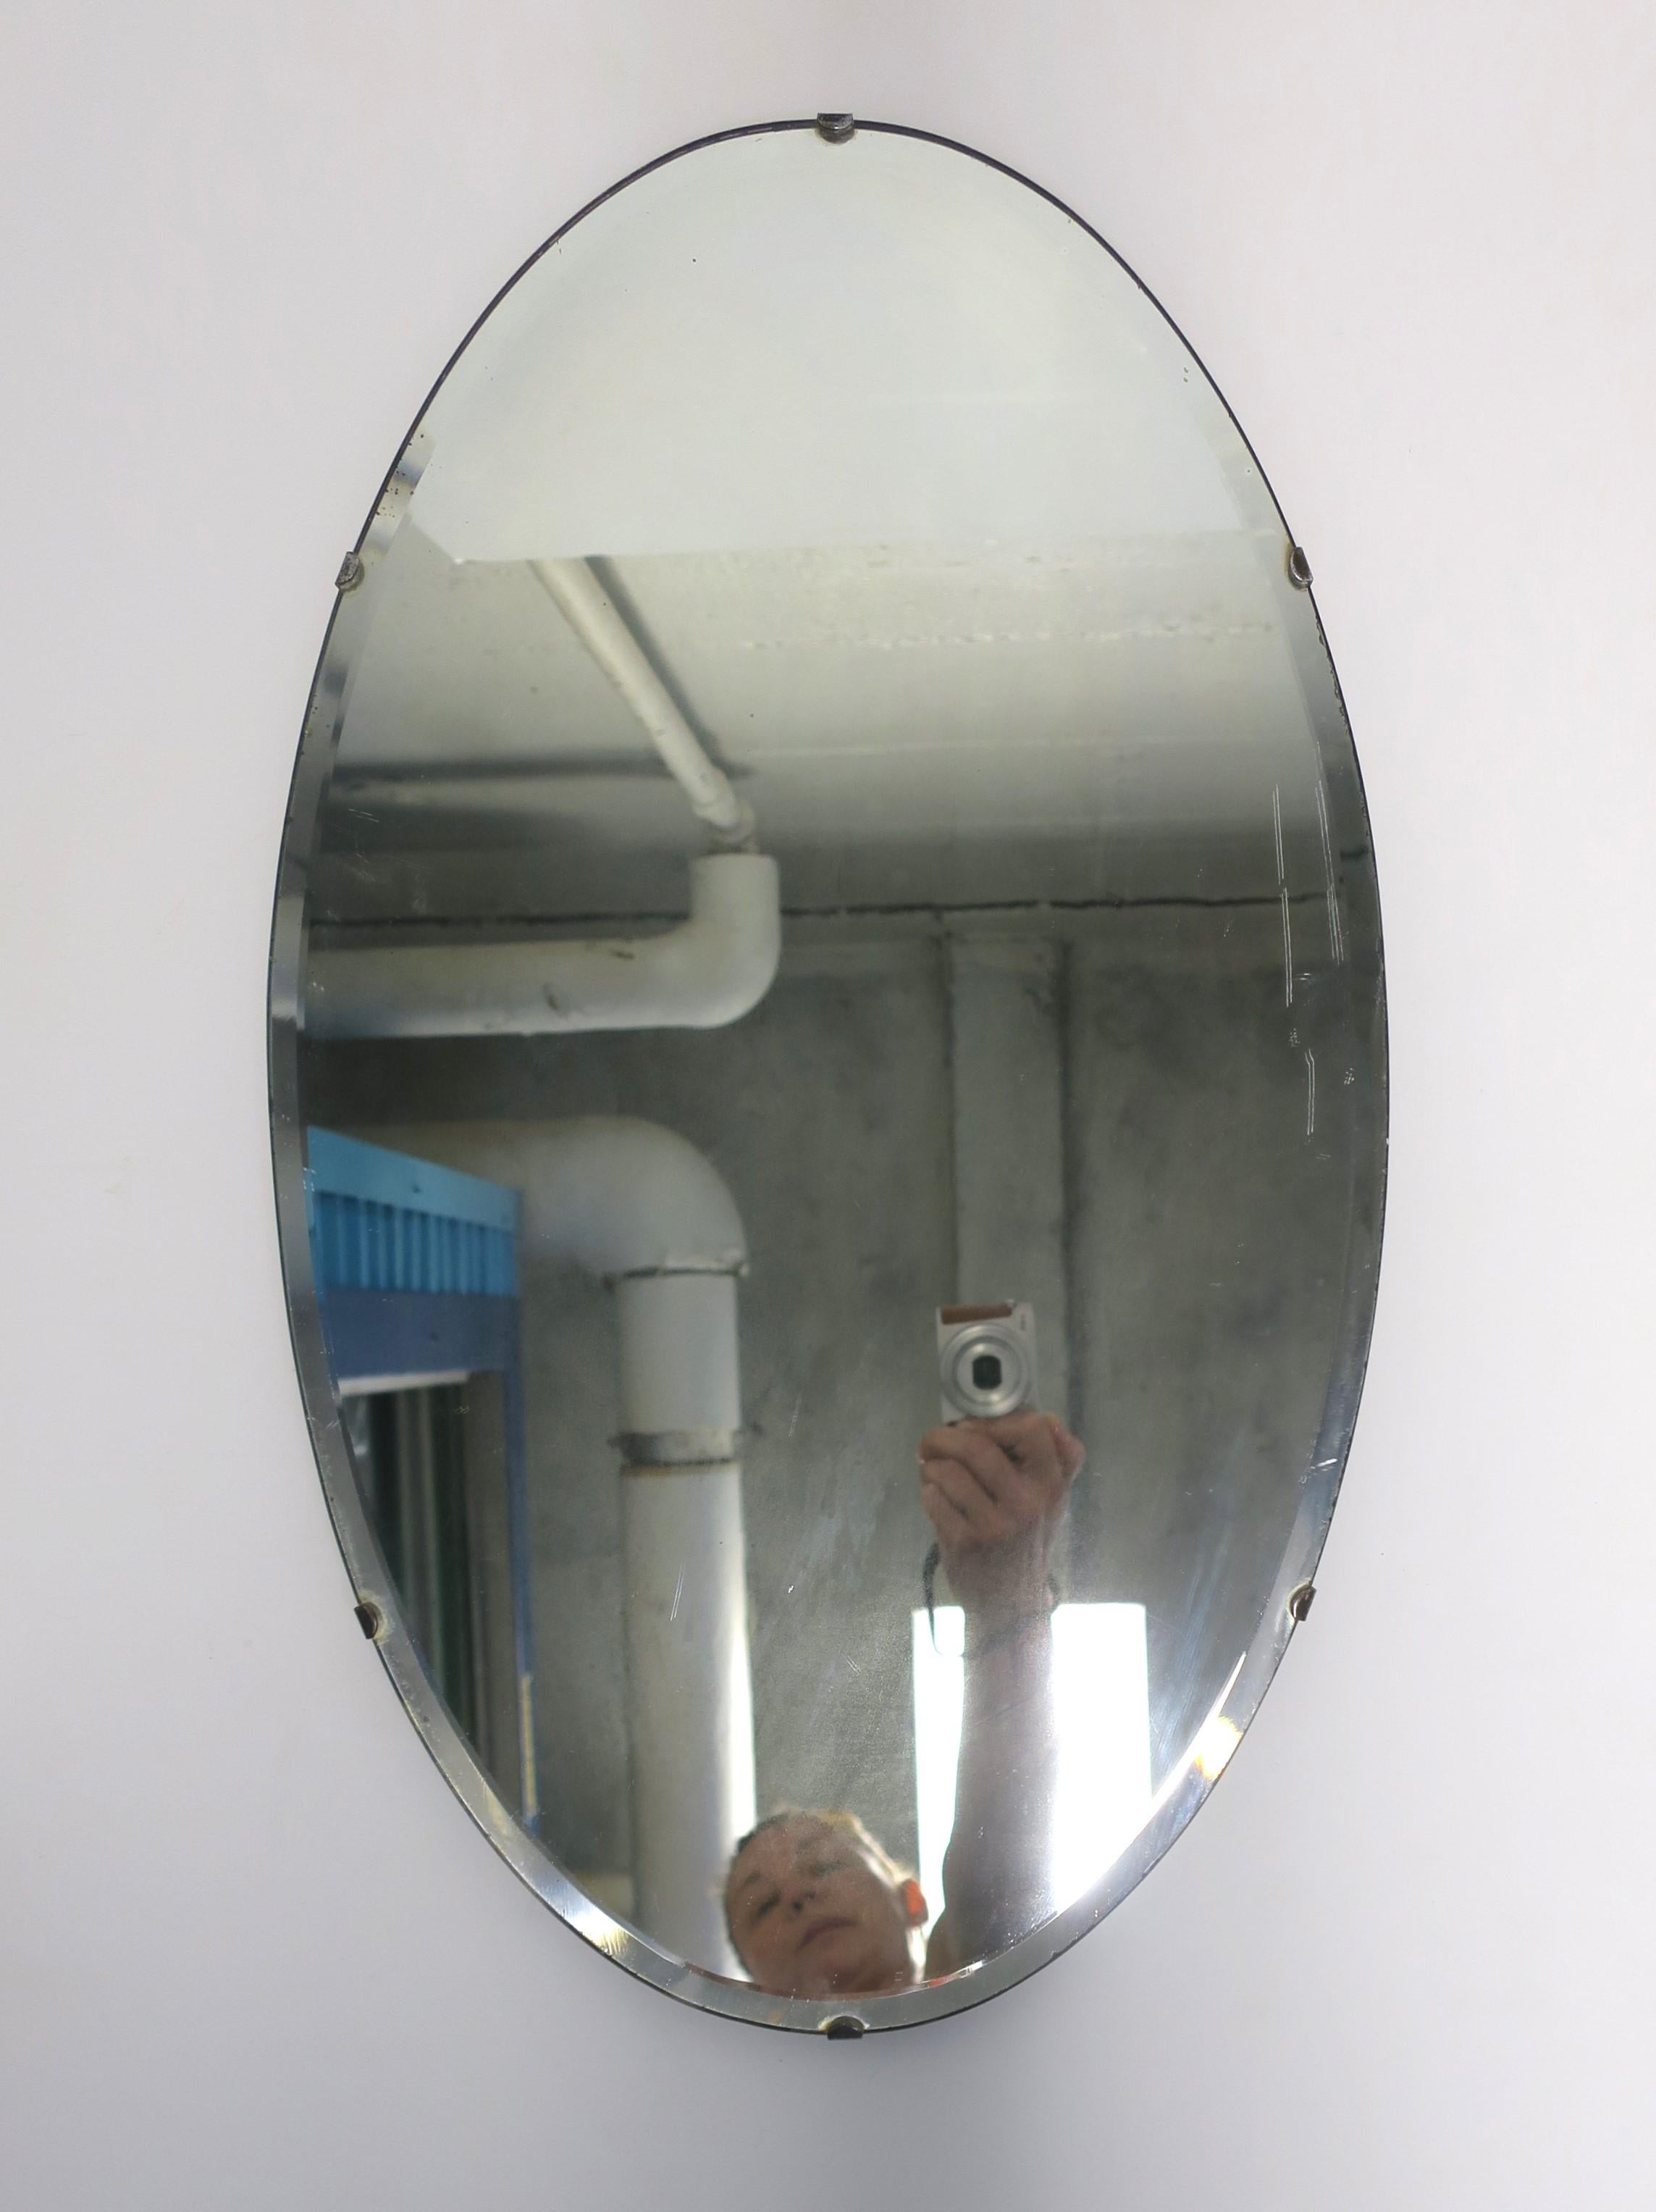 Antiker ovaler, abgeschrägter Wandspiegel, ca. Anfang 20. Jahrhundert, USA. Ein ovaler Spiegel mit abgeschrägter Kante und vorbereitet für die Aufhängung an der Rückseite wie abgebildet. Ein großartiger Wandspiegel für jede Wand, einschließlich